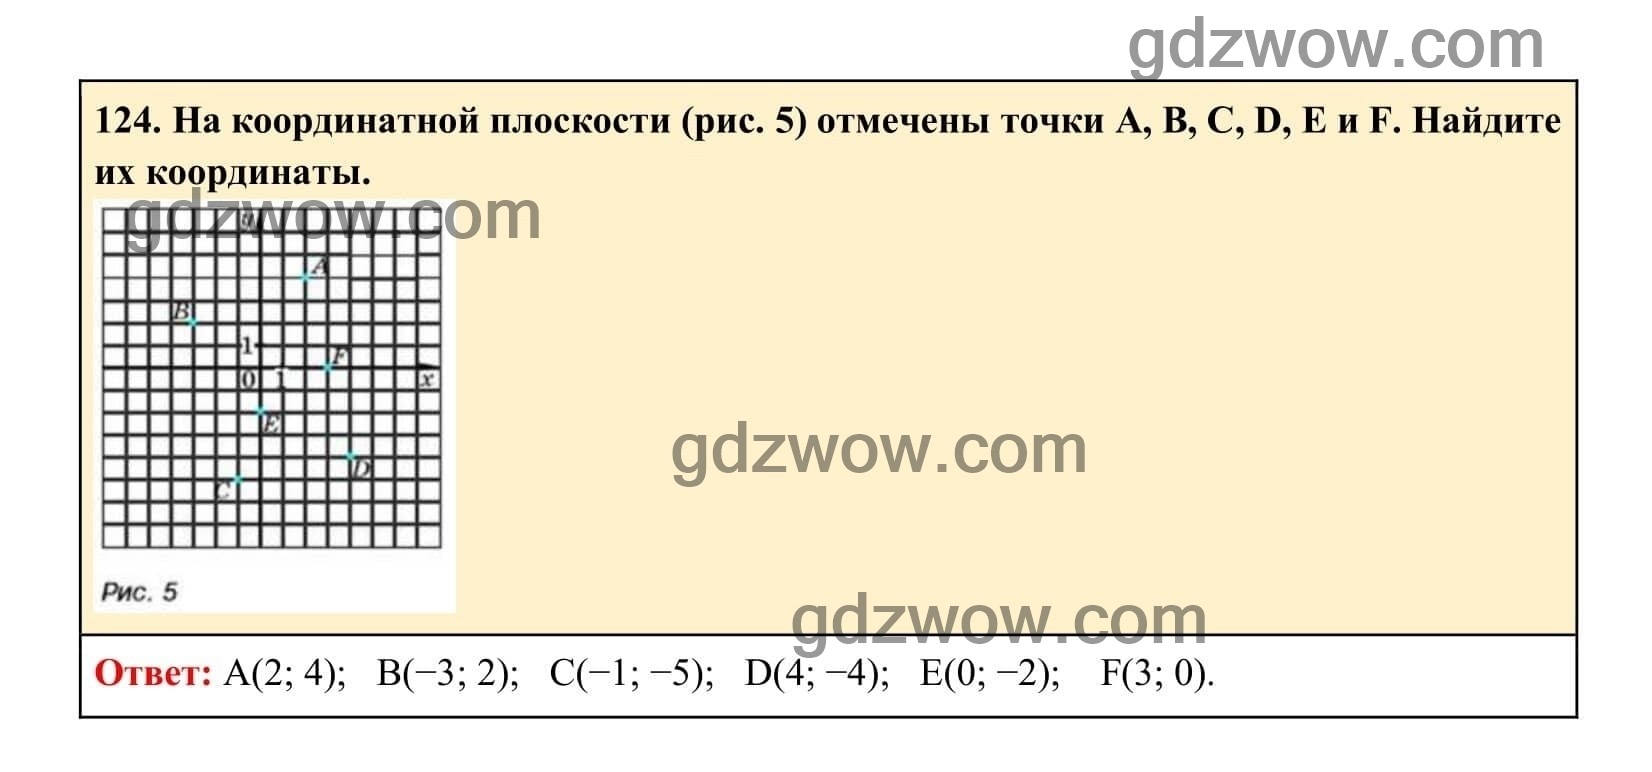 Упражнение 124 - ГДЗ по Алгебре 7 класс Учебник Макарычев (решебник) - GDZwow